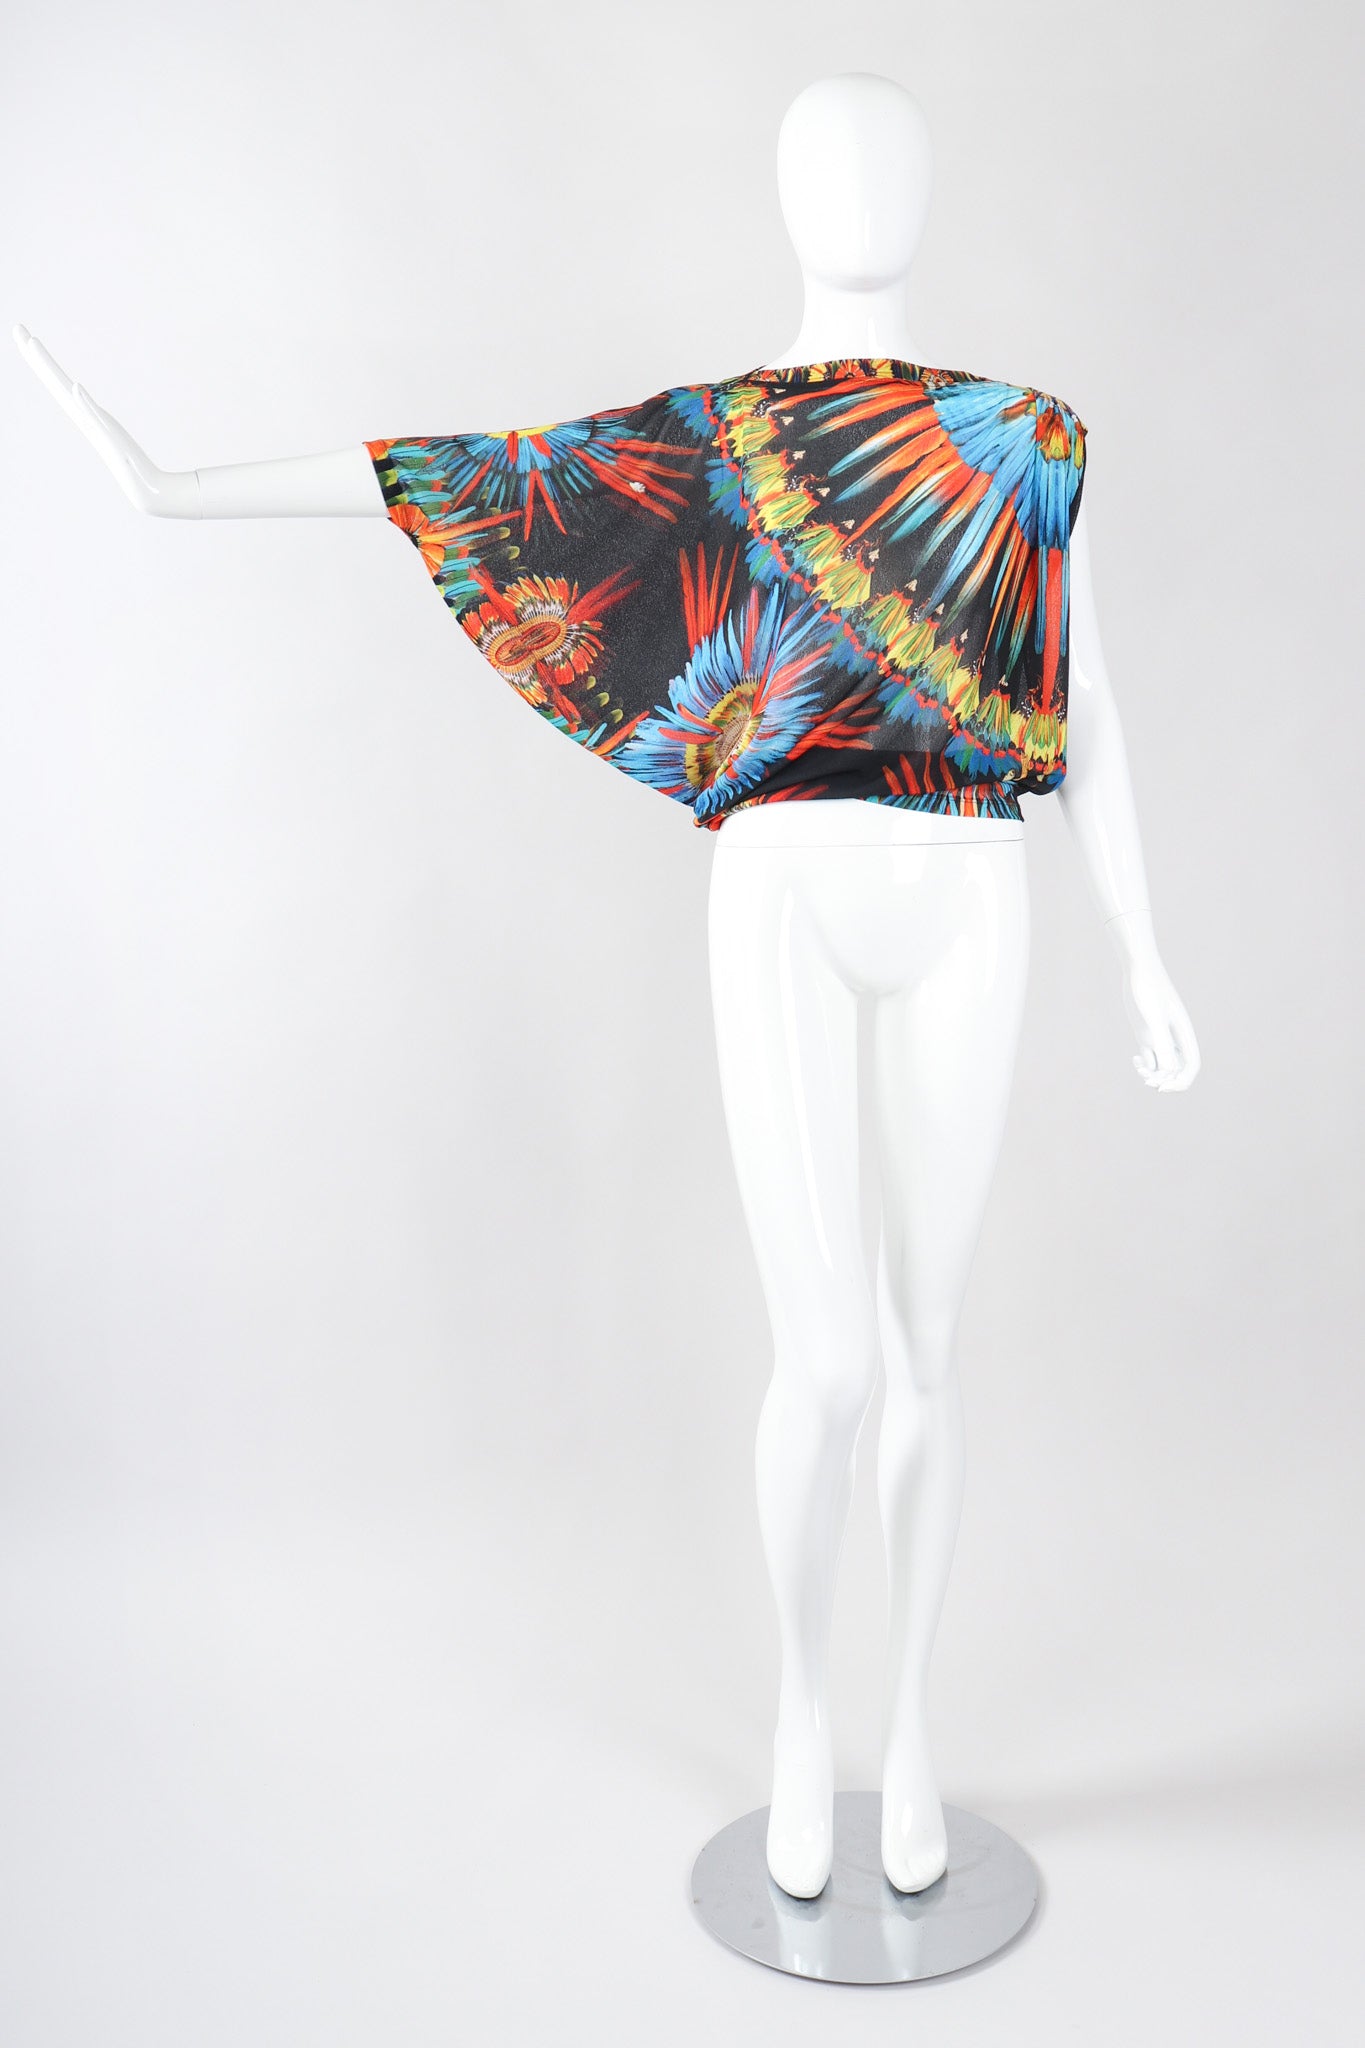 Recess Los Angeles Vintage Jean Paul Gaultier Soleil Soleil Asymmetrical Mesh Batwing Top